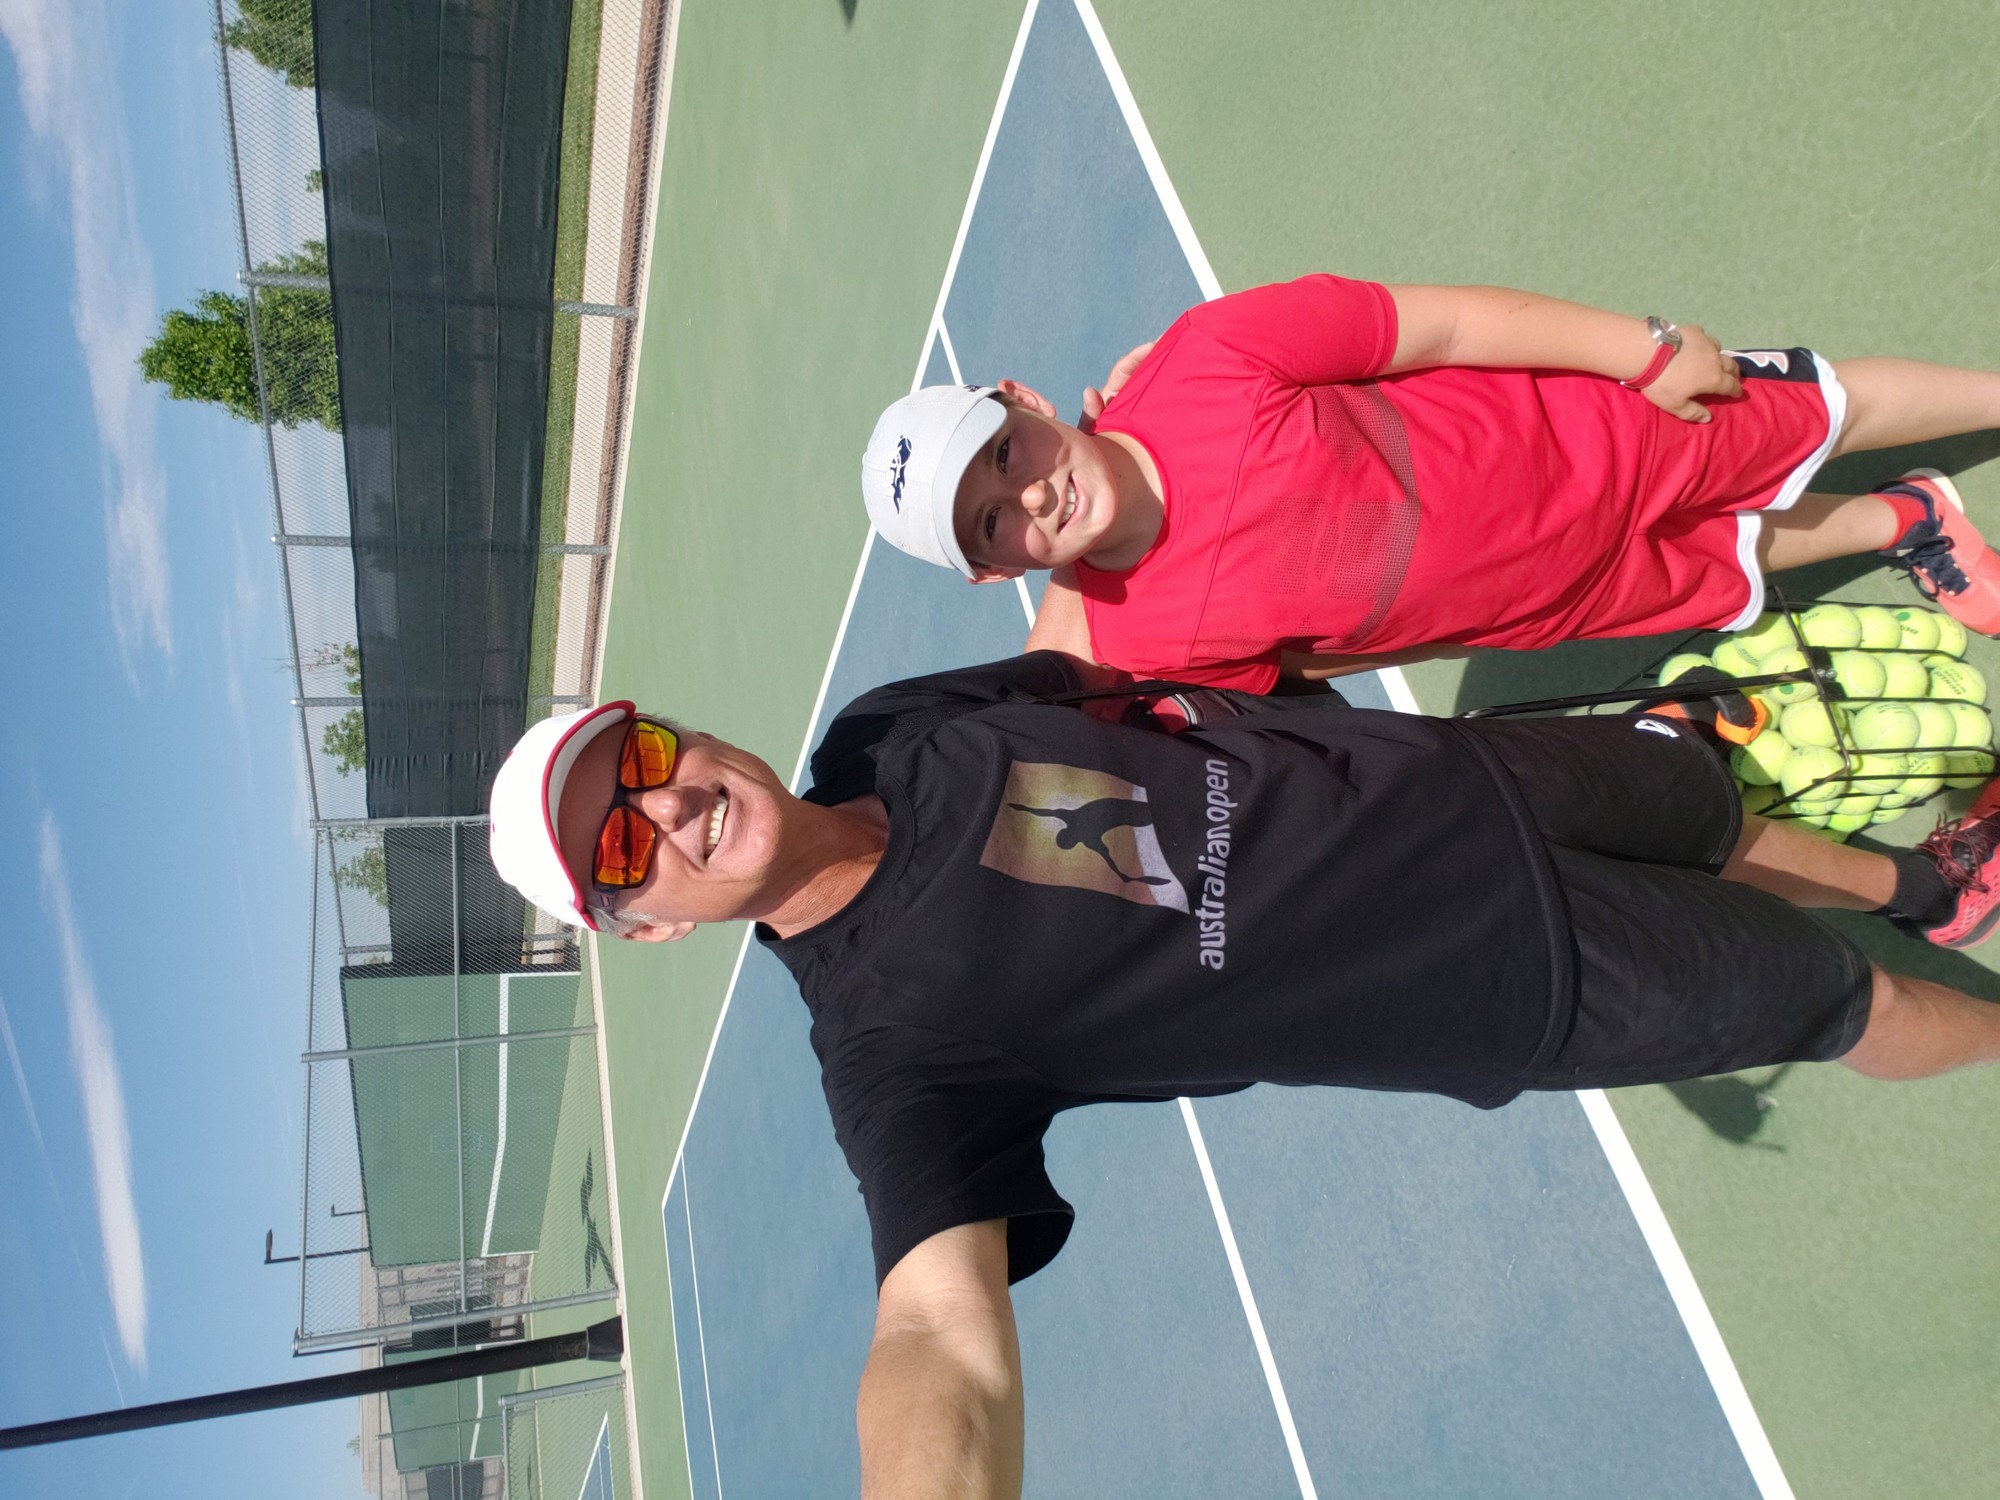 Robert S. teaches tennis lessons in Albuquerque, NM